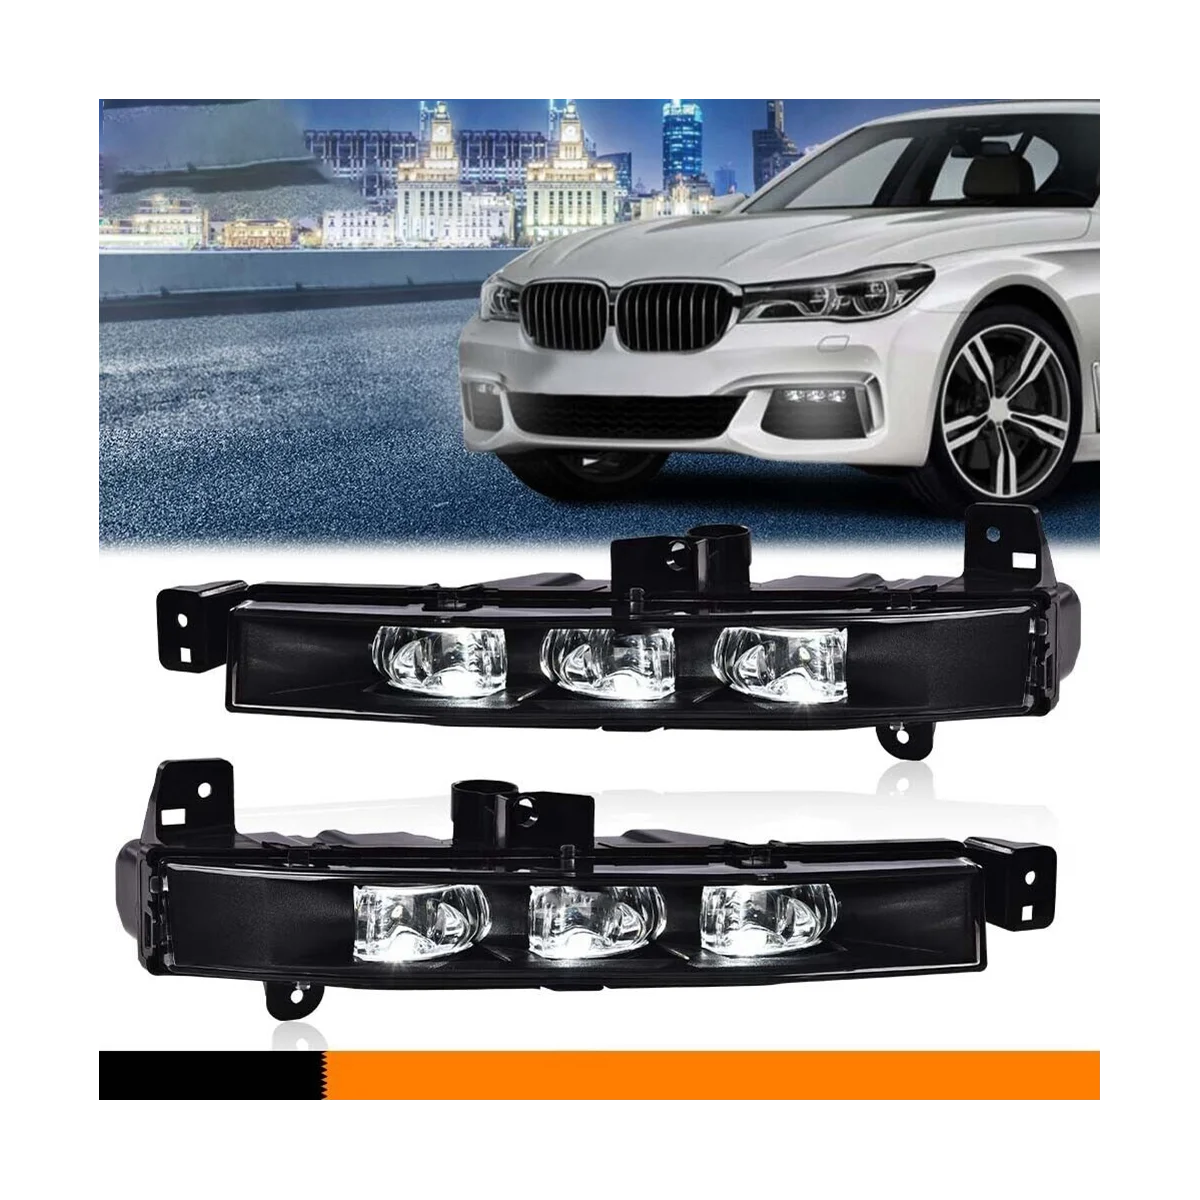 

Car Left Side LED Fog Lamp Driving Lamp Daytime Running Light for BMW G11 G12 740I 750I XDrive 63177342953